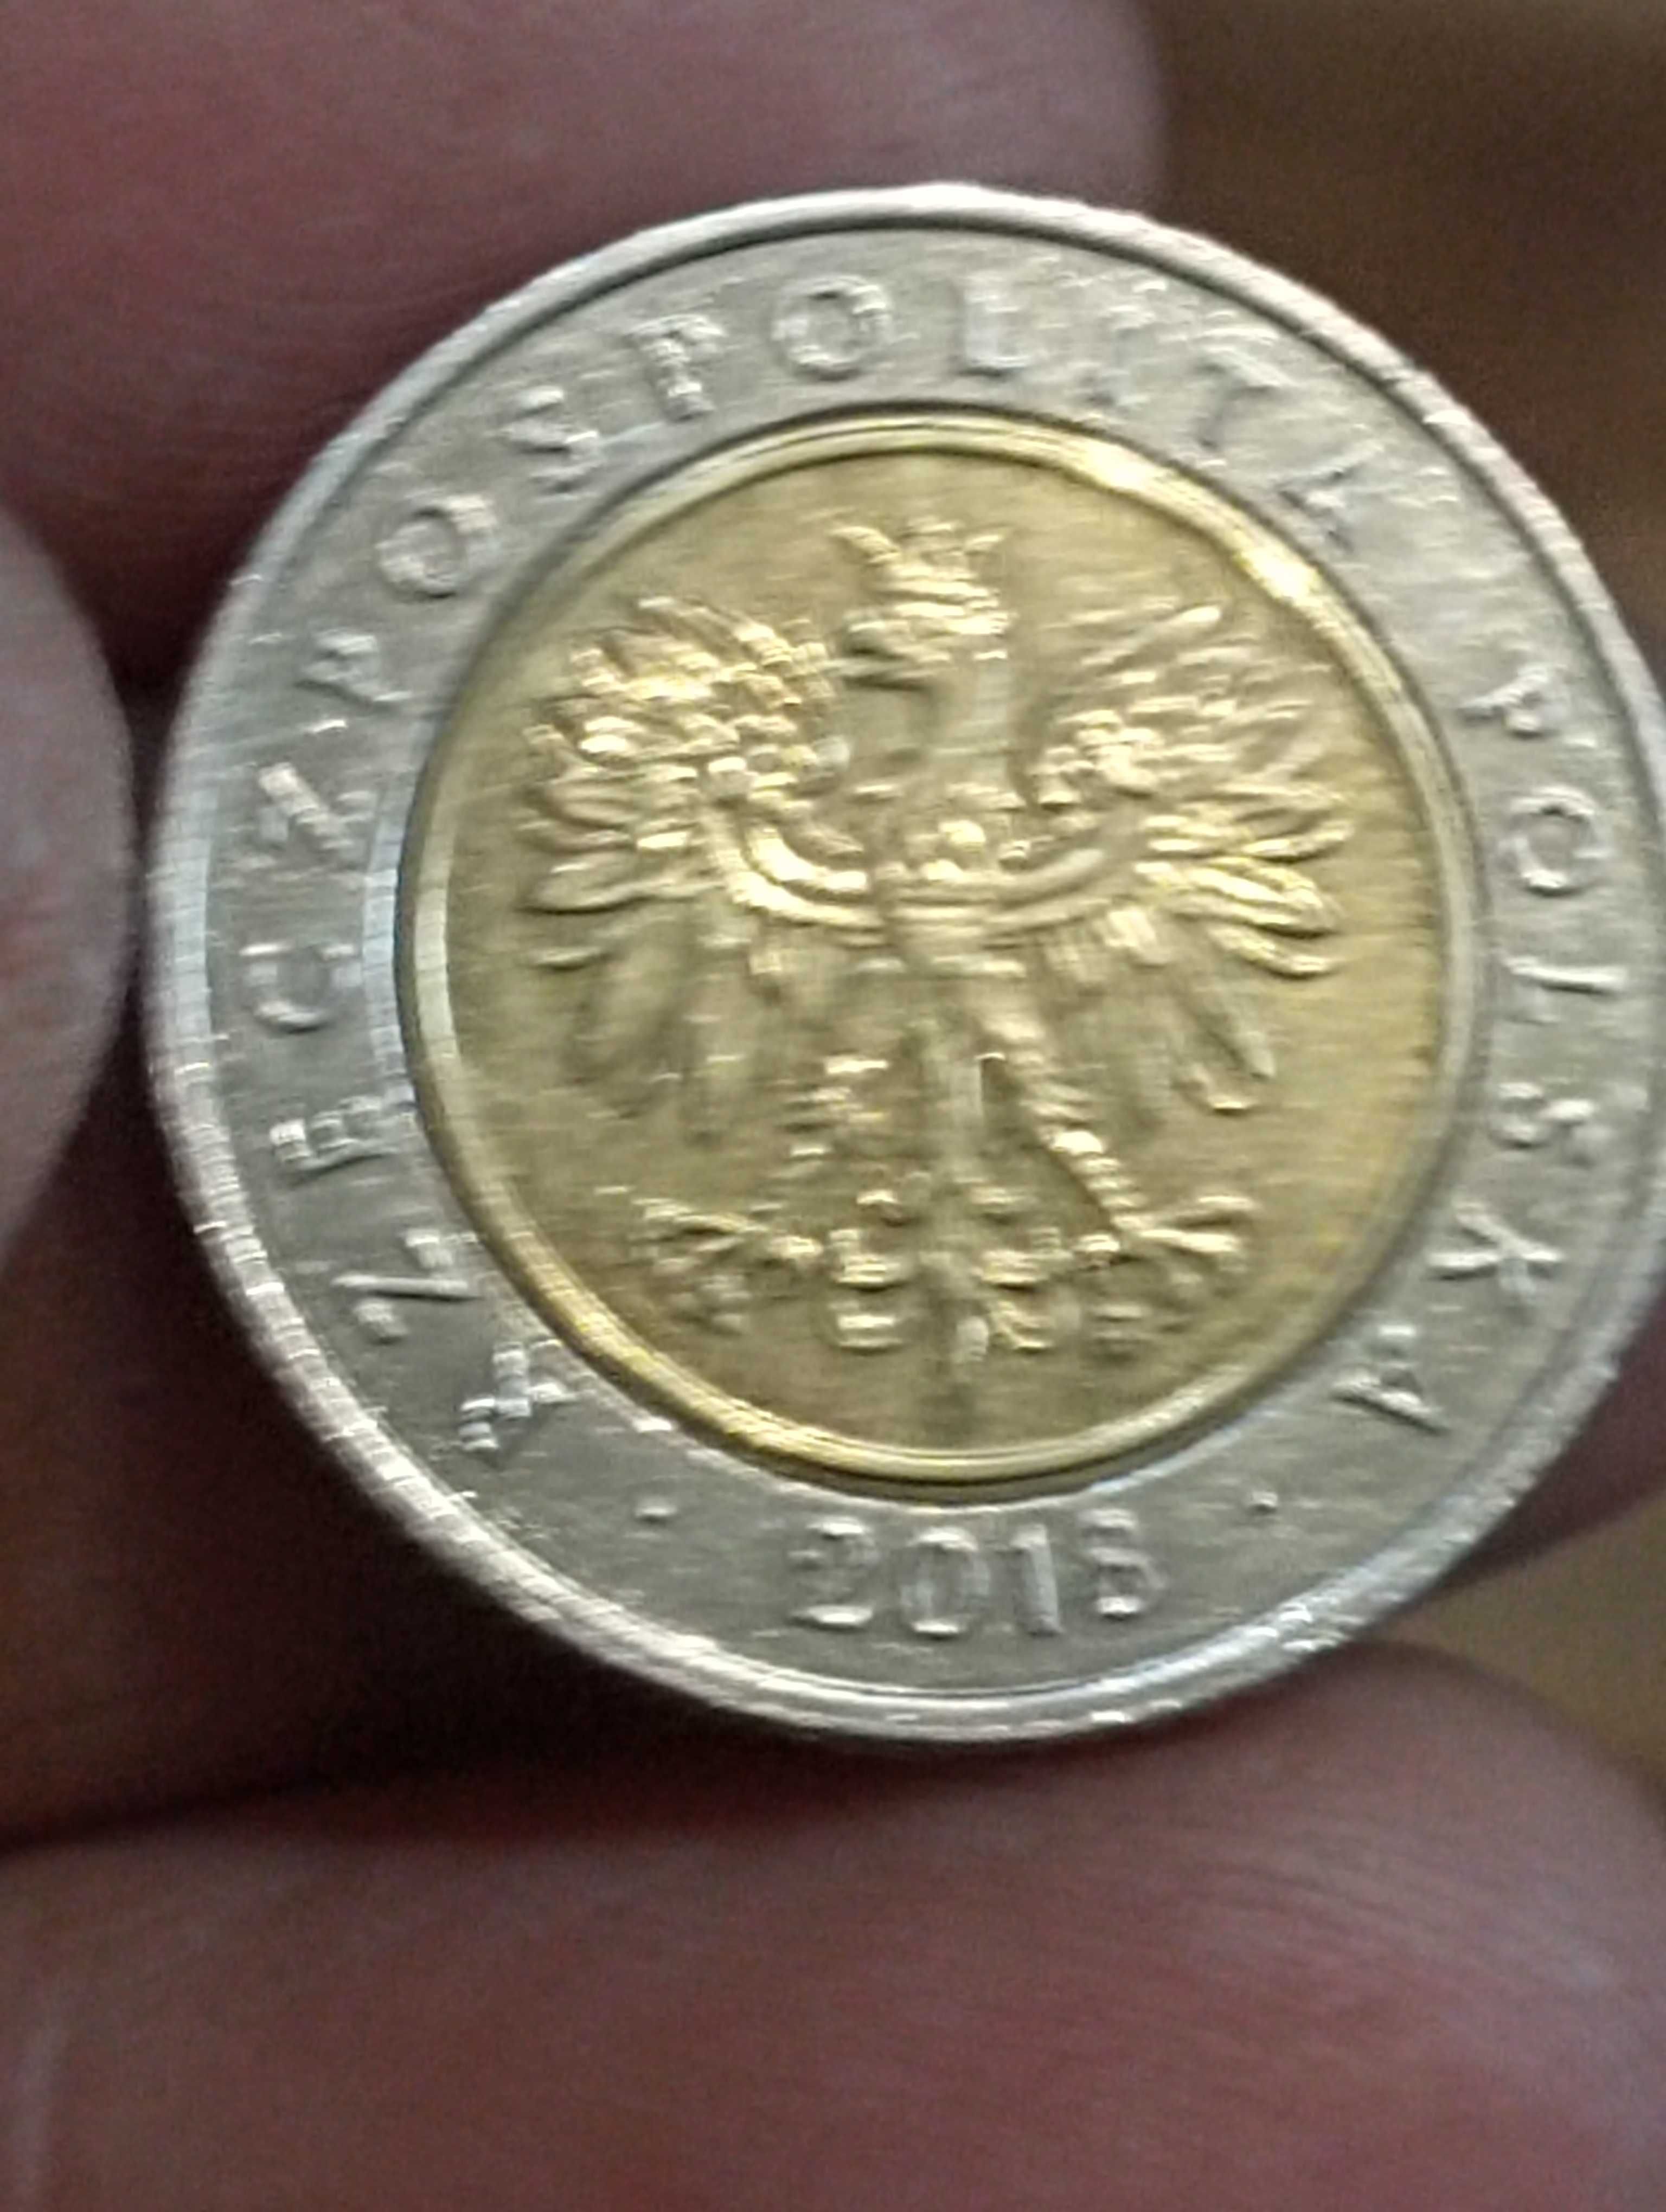 Sprzedam monete odzyskanie niepodleglosci 5 zloty 2018